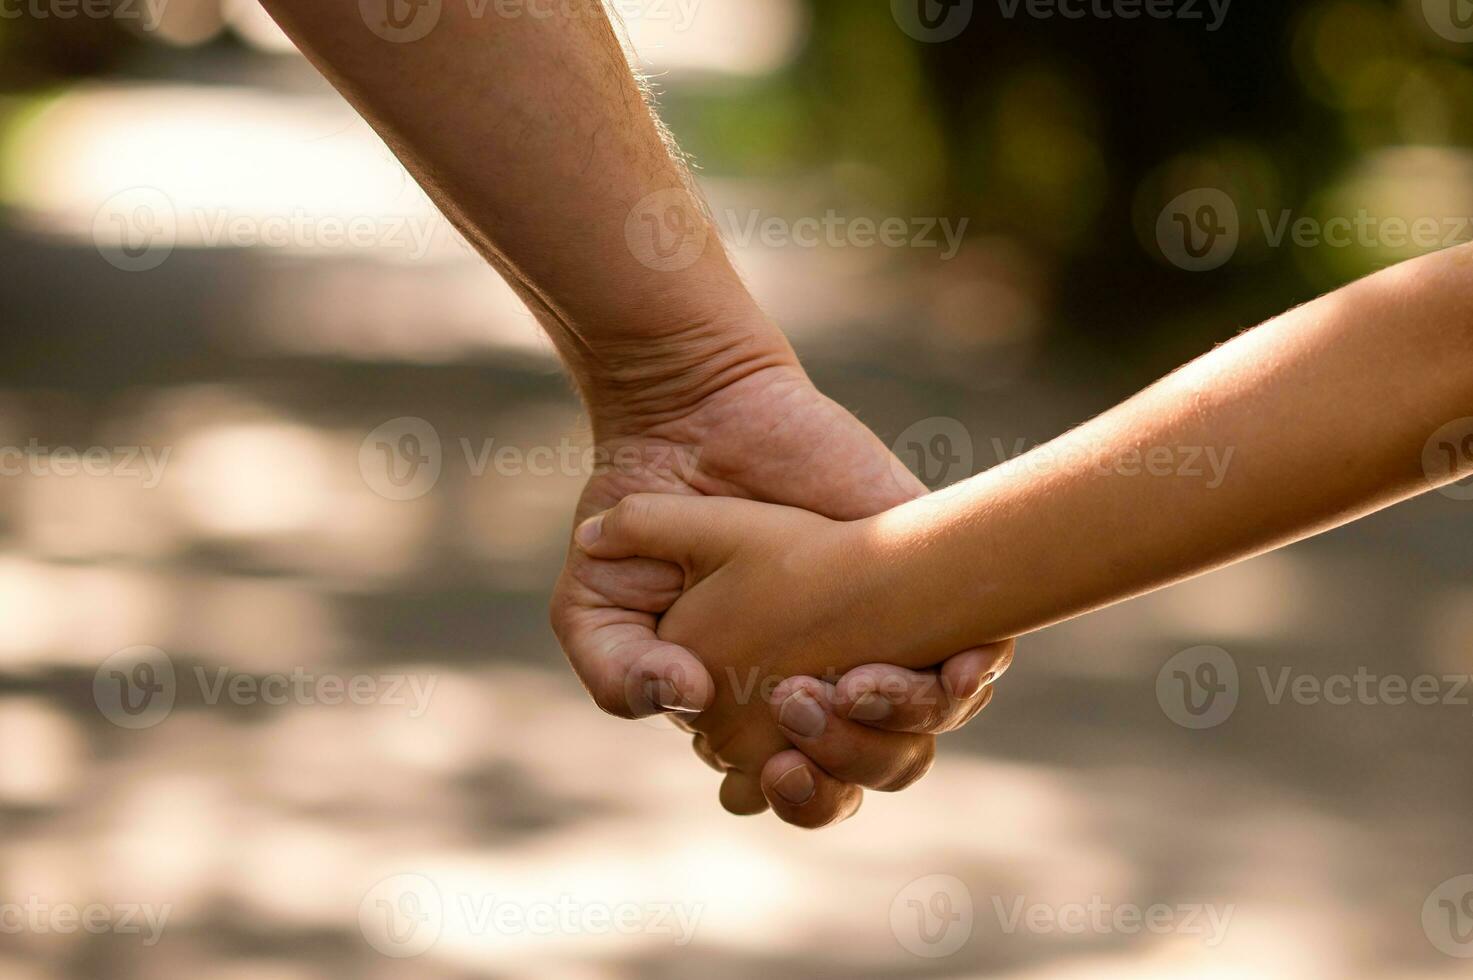 de fars hand hölls tätt de hand av hans liten son mot de bakgrund av grön lövverk, närbild foto